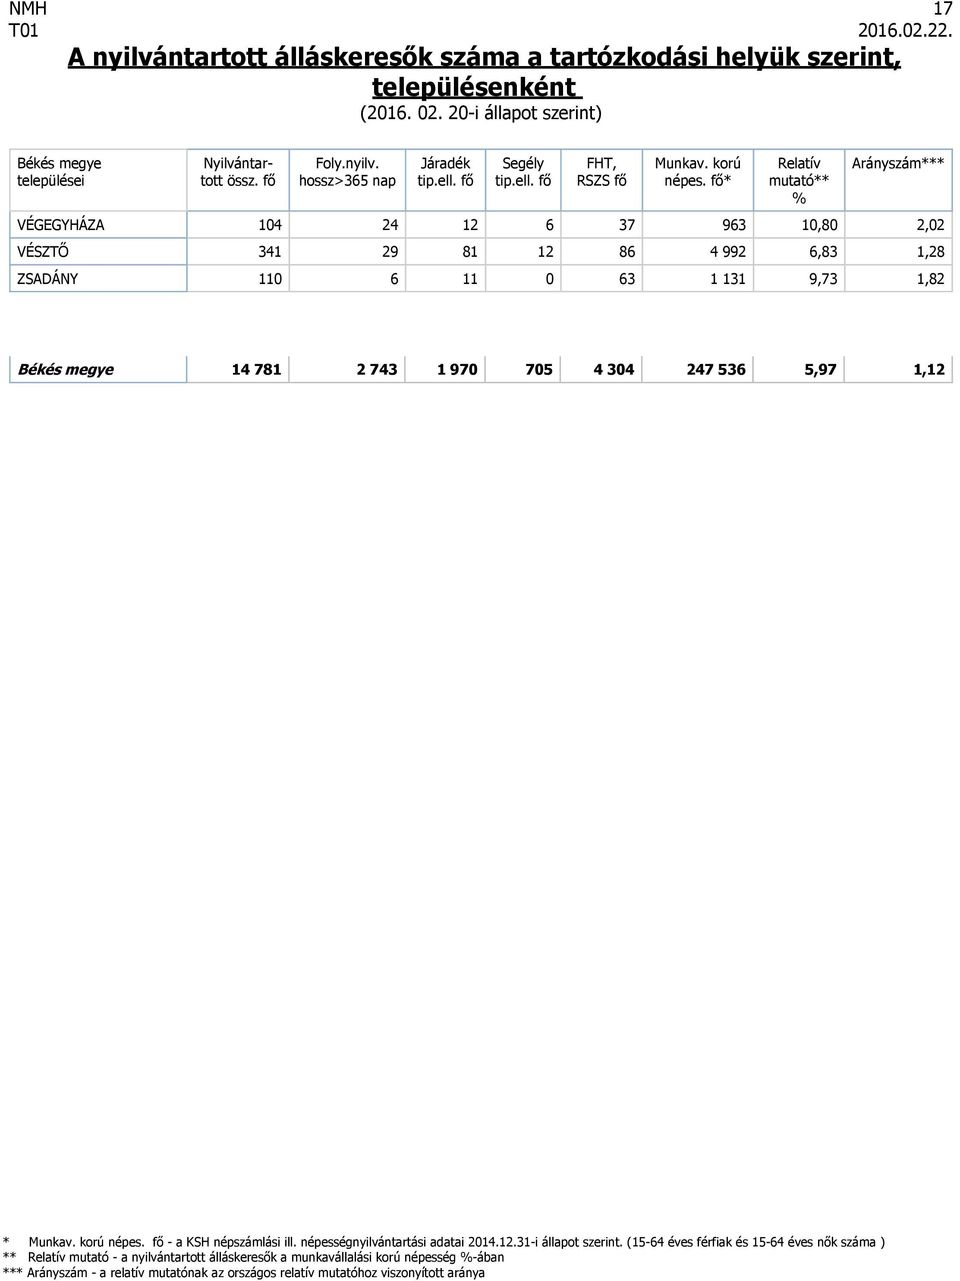 fő - a KSH népszámlási ill. népességnyilvántartási adatai 2014.12.31-i állapot szerint.